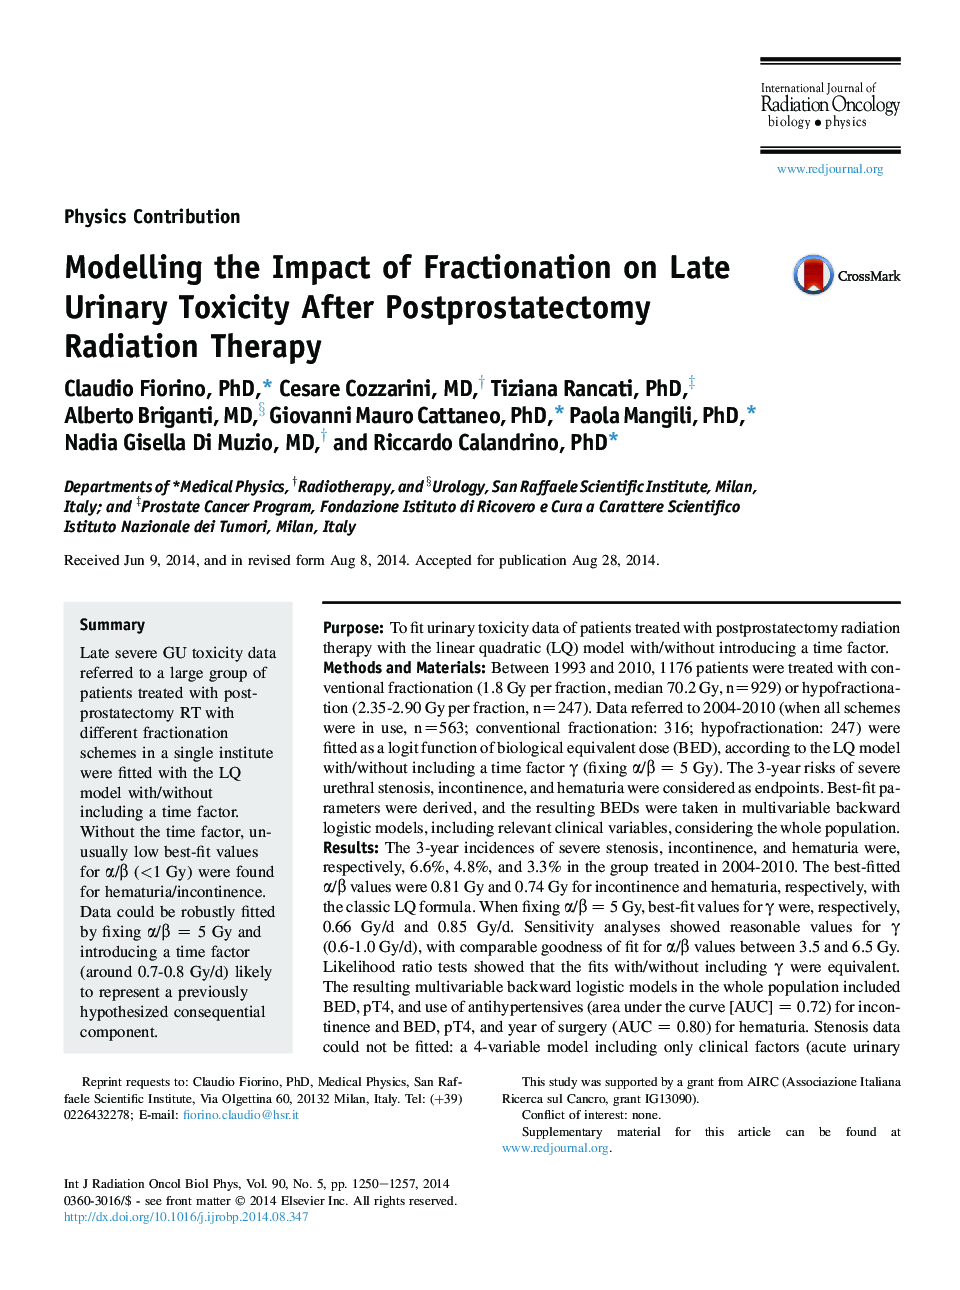 مدل سازی اثر تقسیم بندی بر سمیت کششی ادرار بعد از درمان پرتودرمانی پس از پروستاتکتومی 